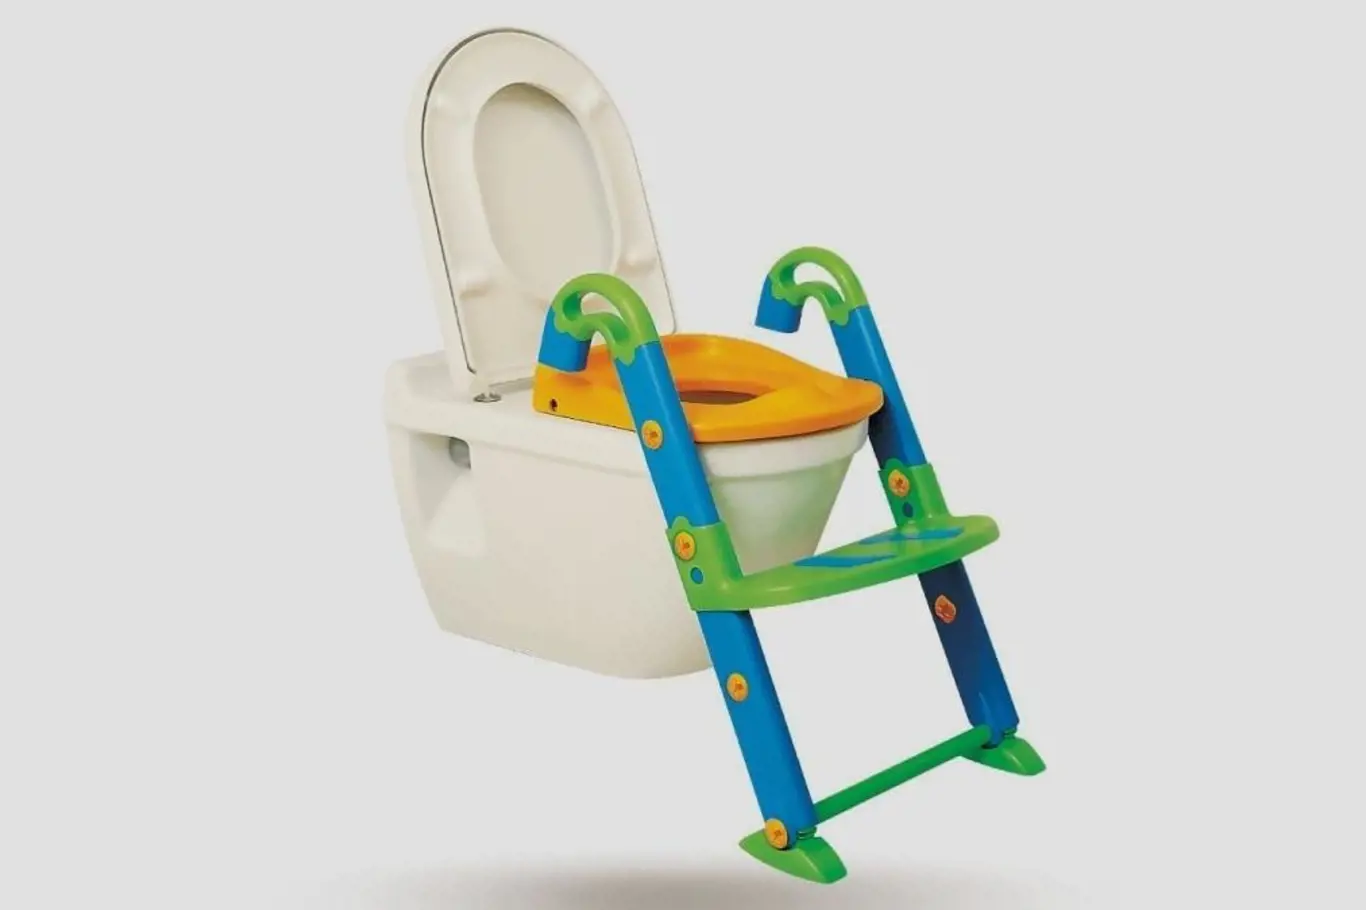 Záchodové prkénko pro děti, nočník i schůdky v jednom. Zdroj: Amazon.com